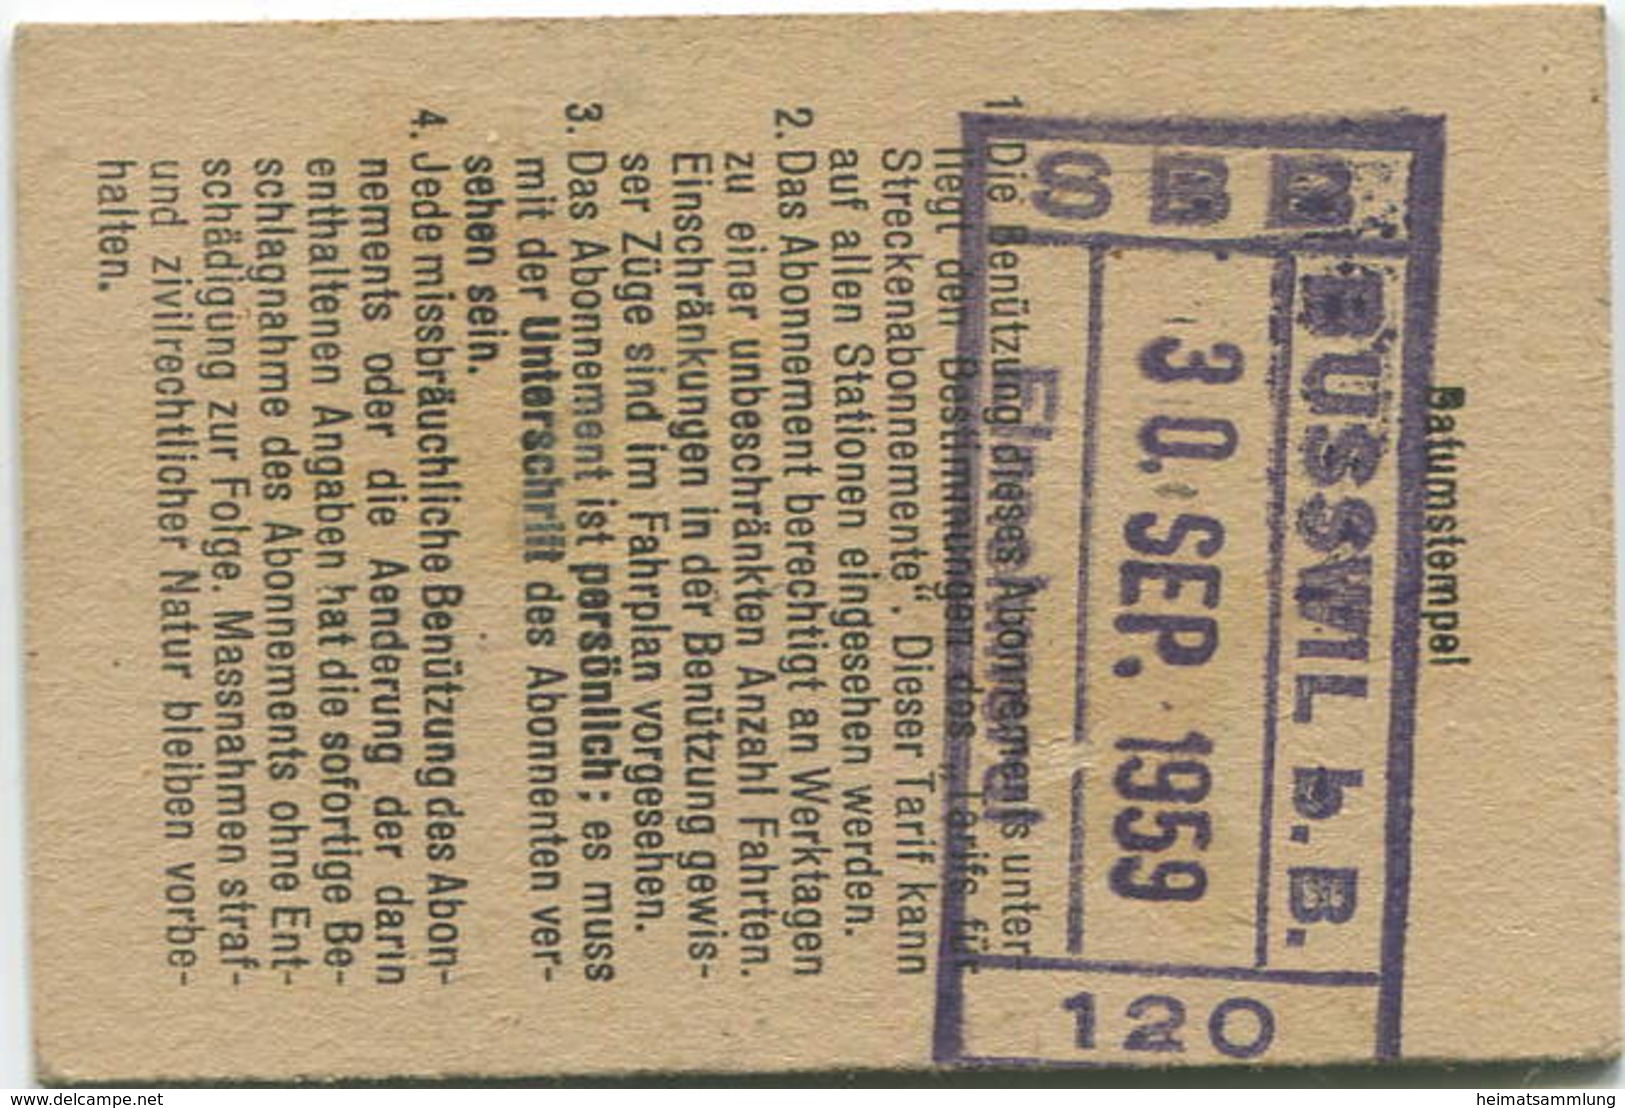 Schweiz - Persönliches Arbeiterabonnement - Busswil Nach Und Von Biel/Bienne - Fahrkarte 2. Klasse 1959 - Europa